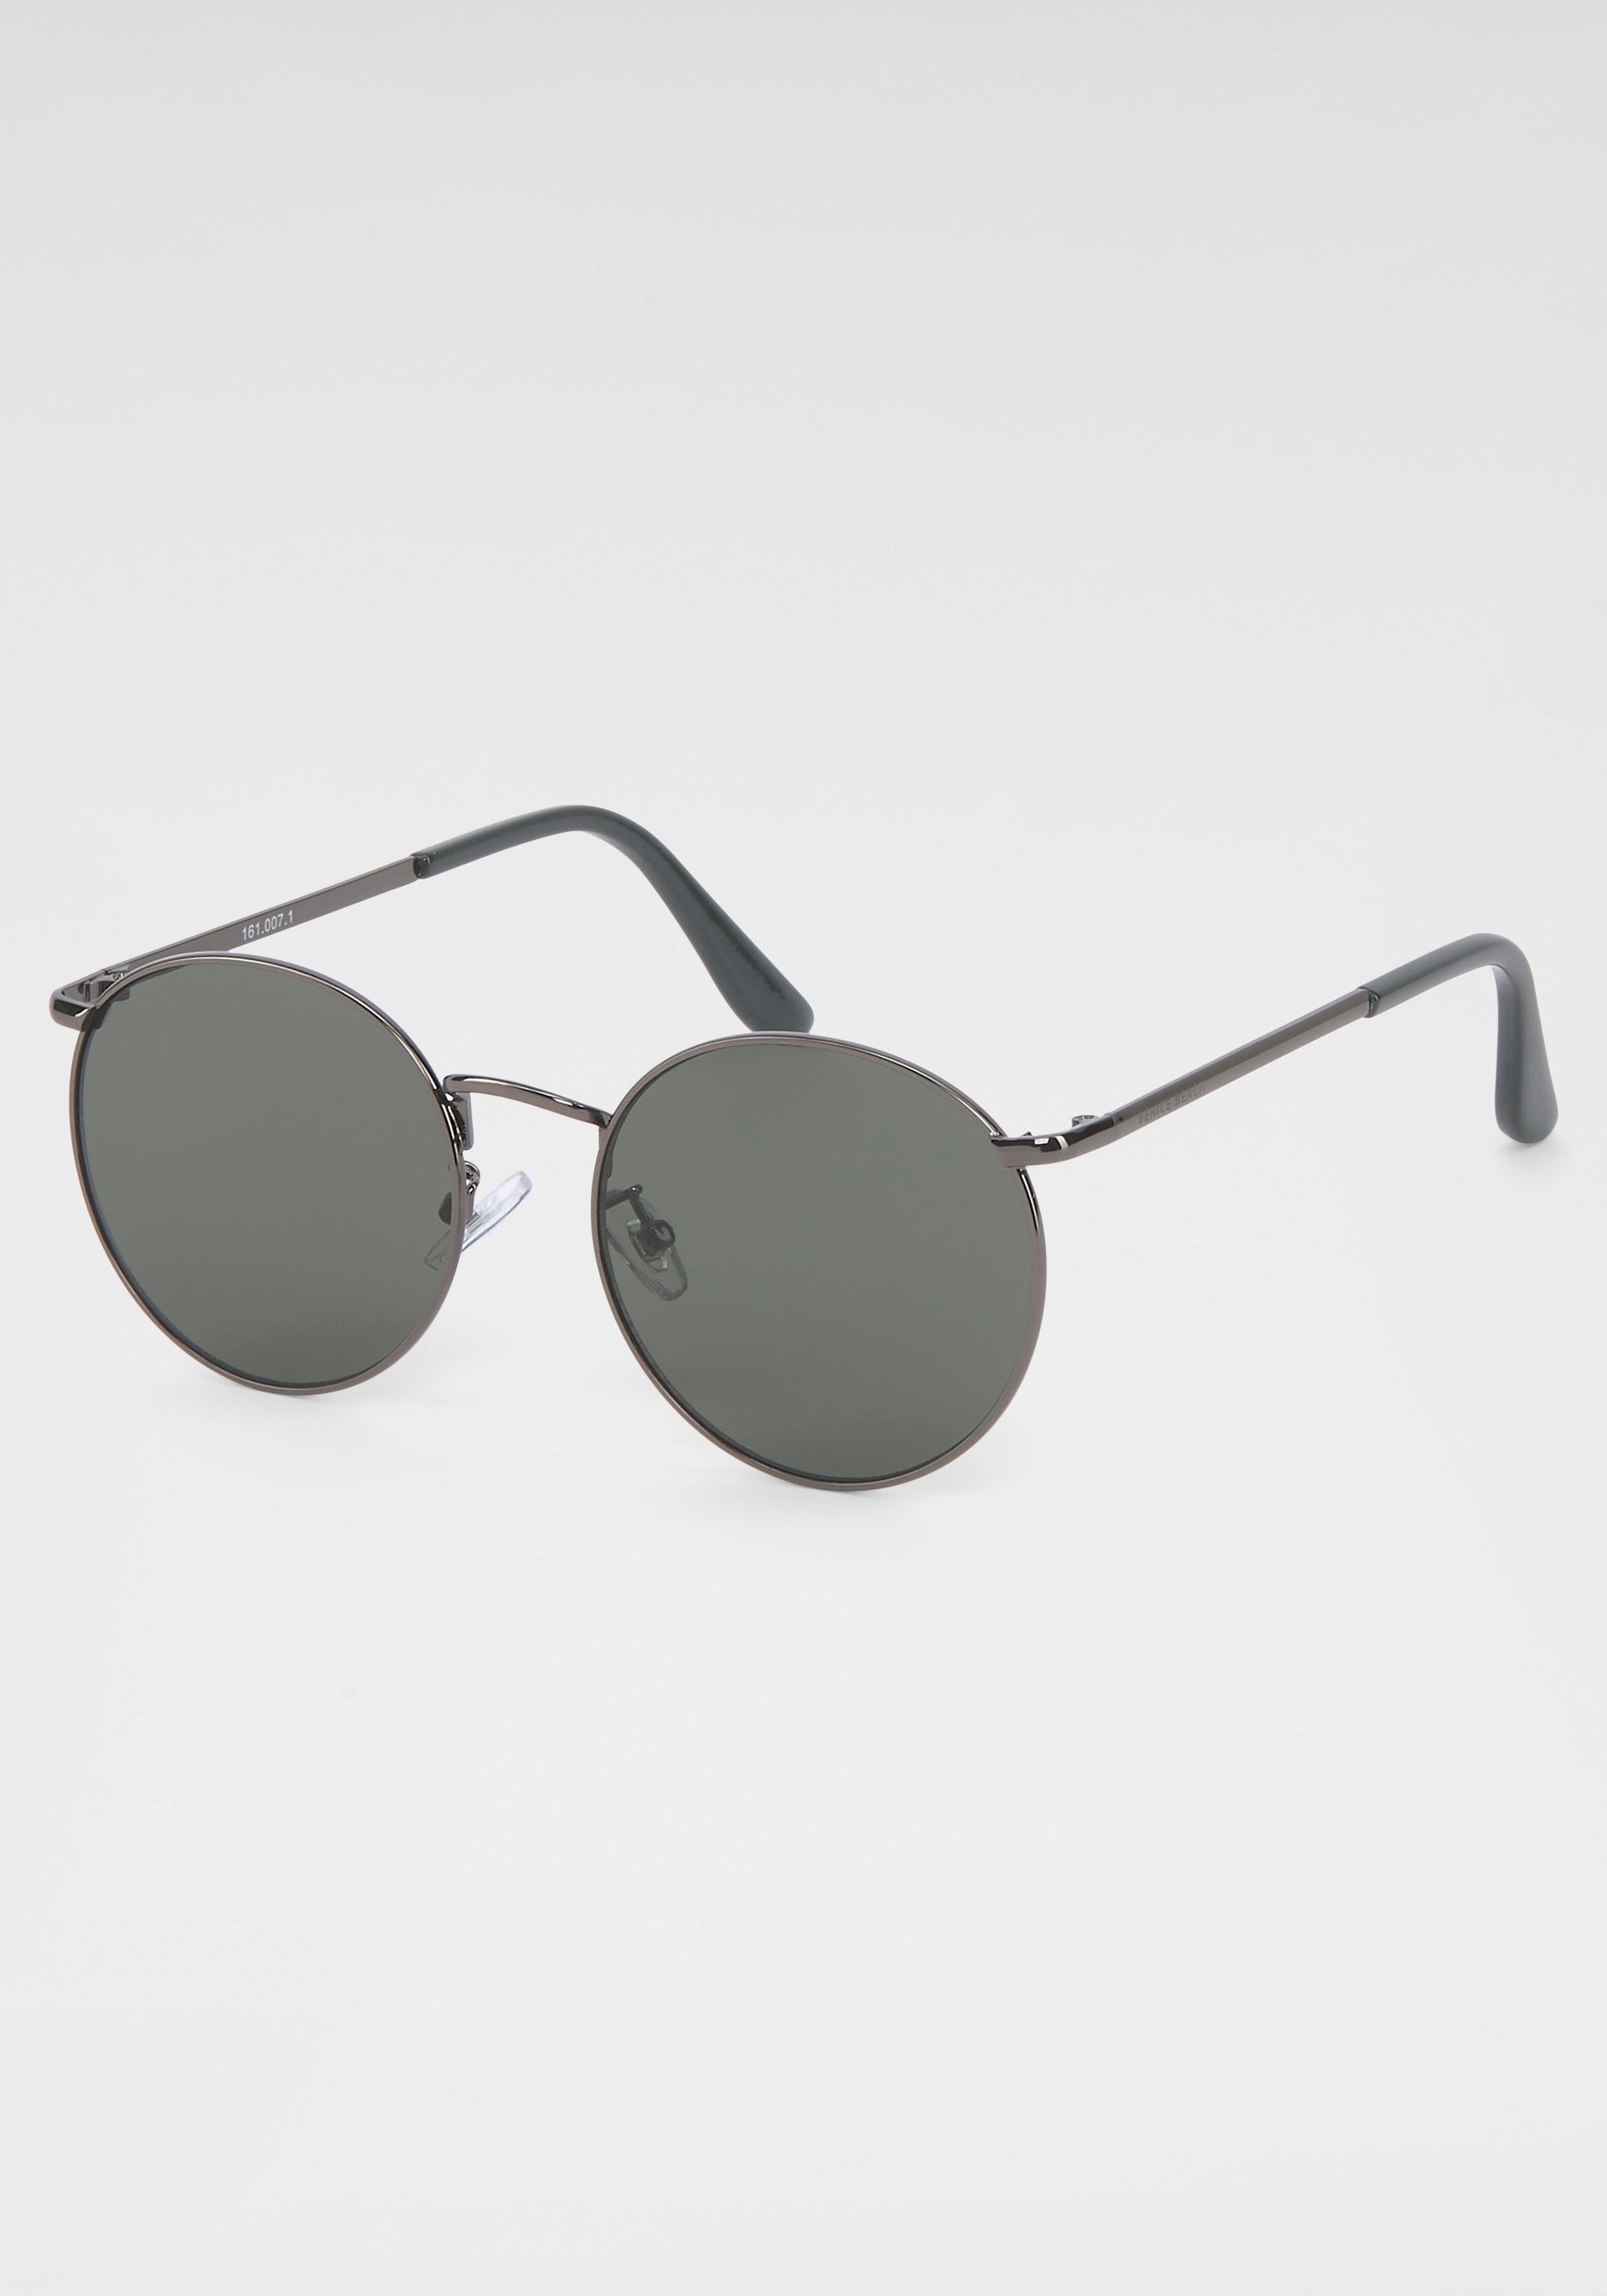 Venice Beach Sonnenbrille online kaufen | OTTO